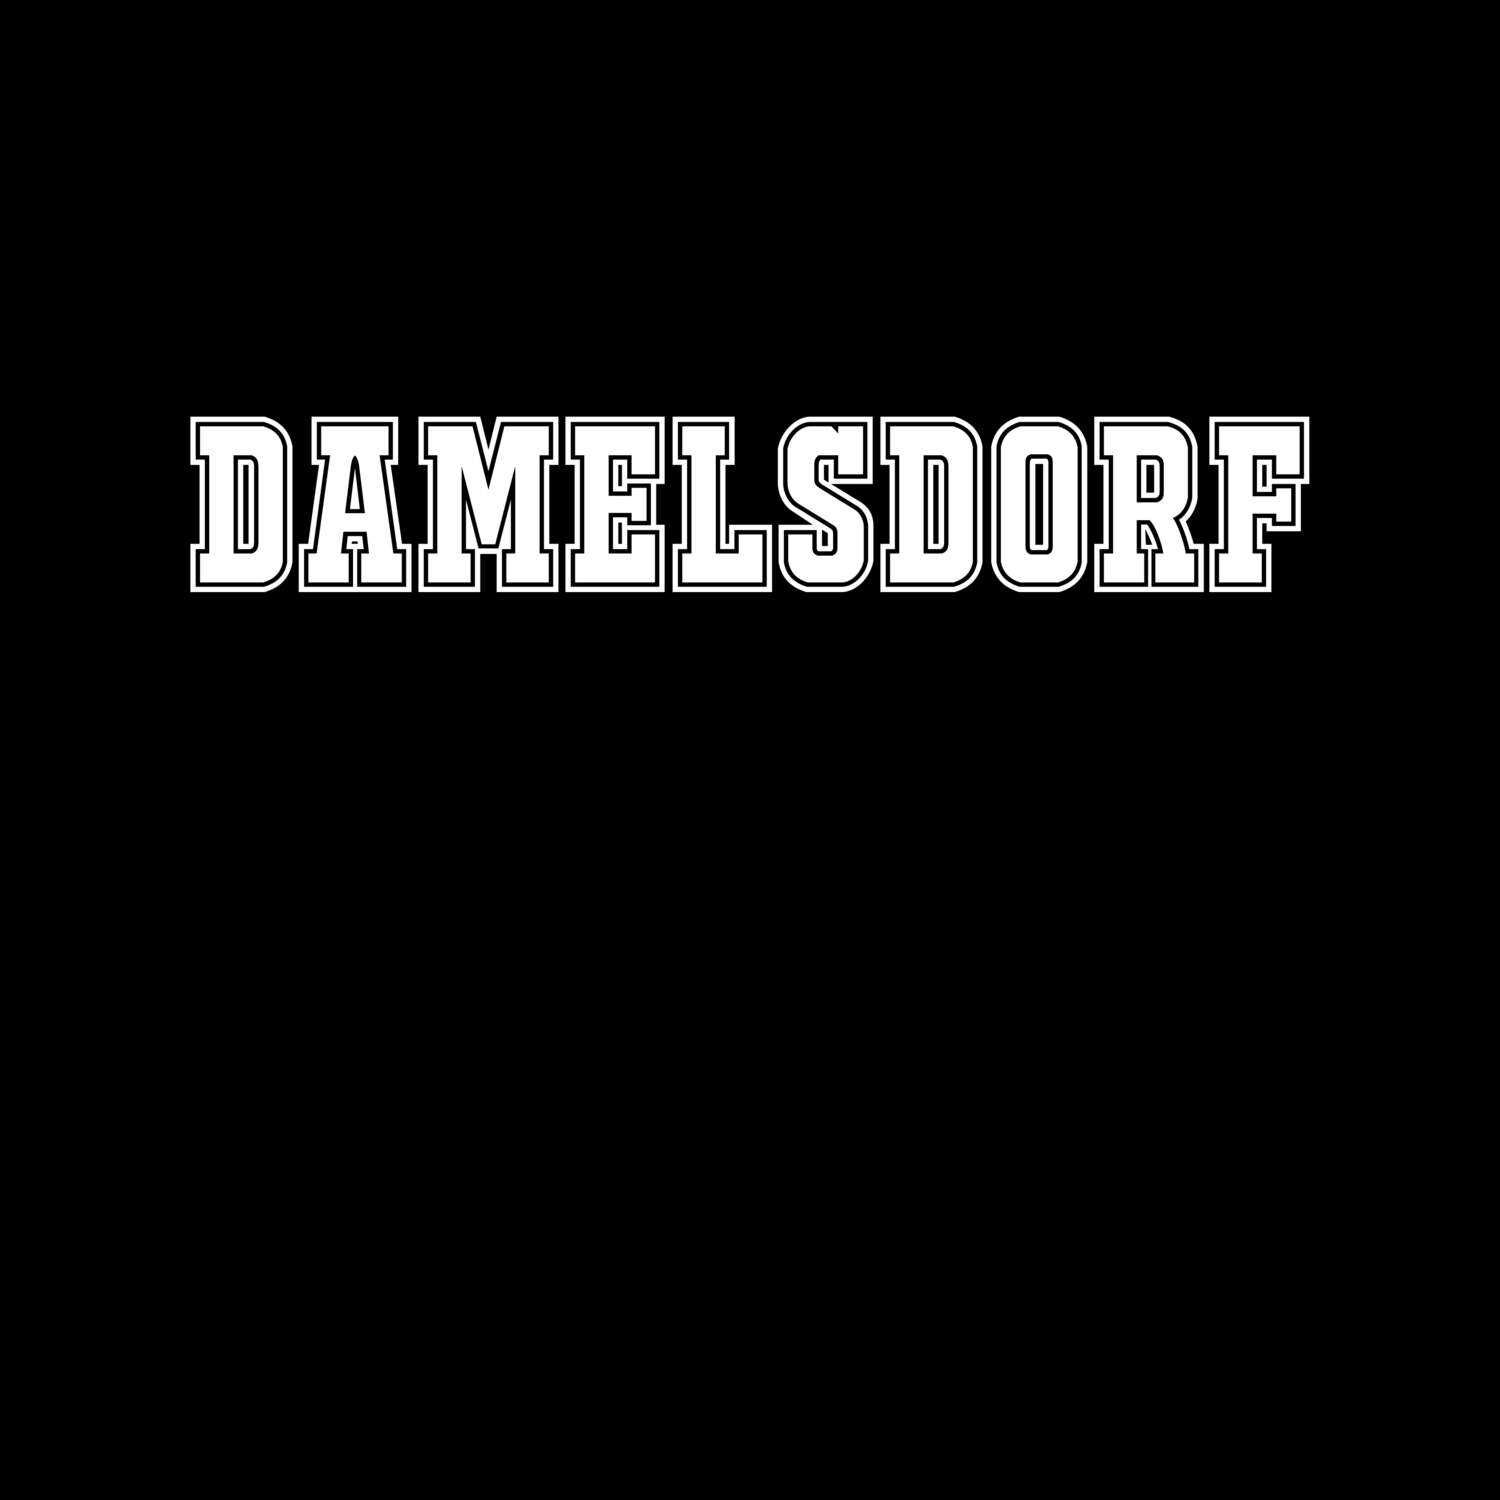 Damelsdorf T-Shirt »Classic«